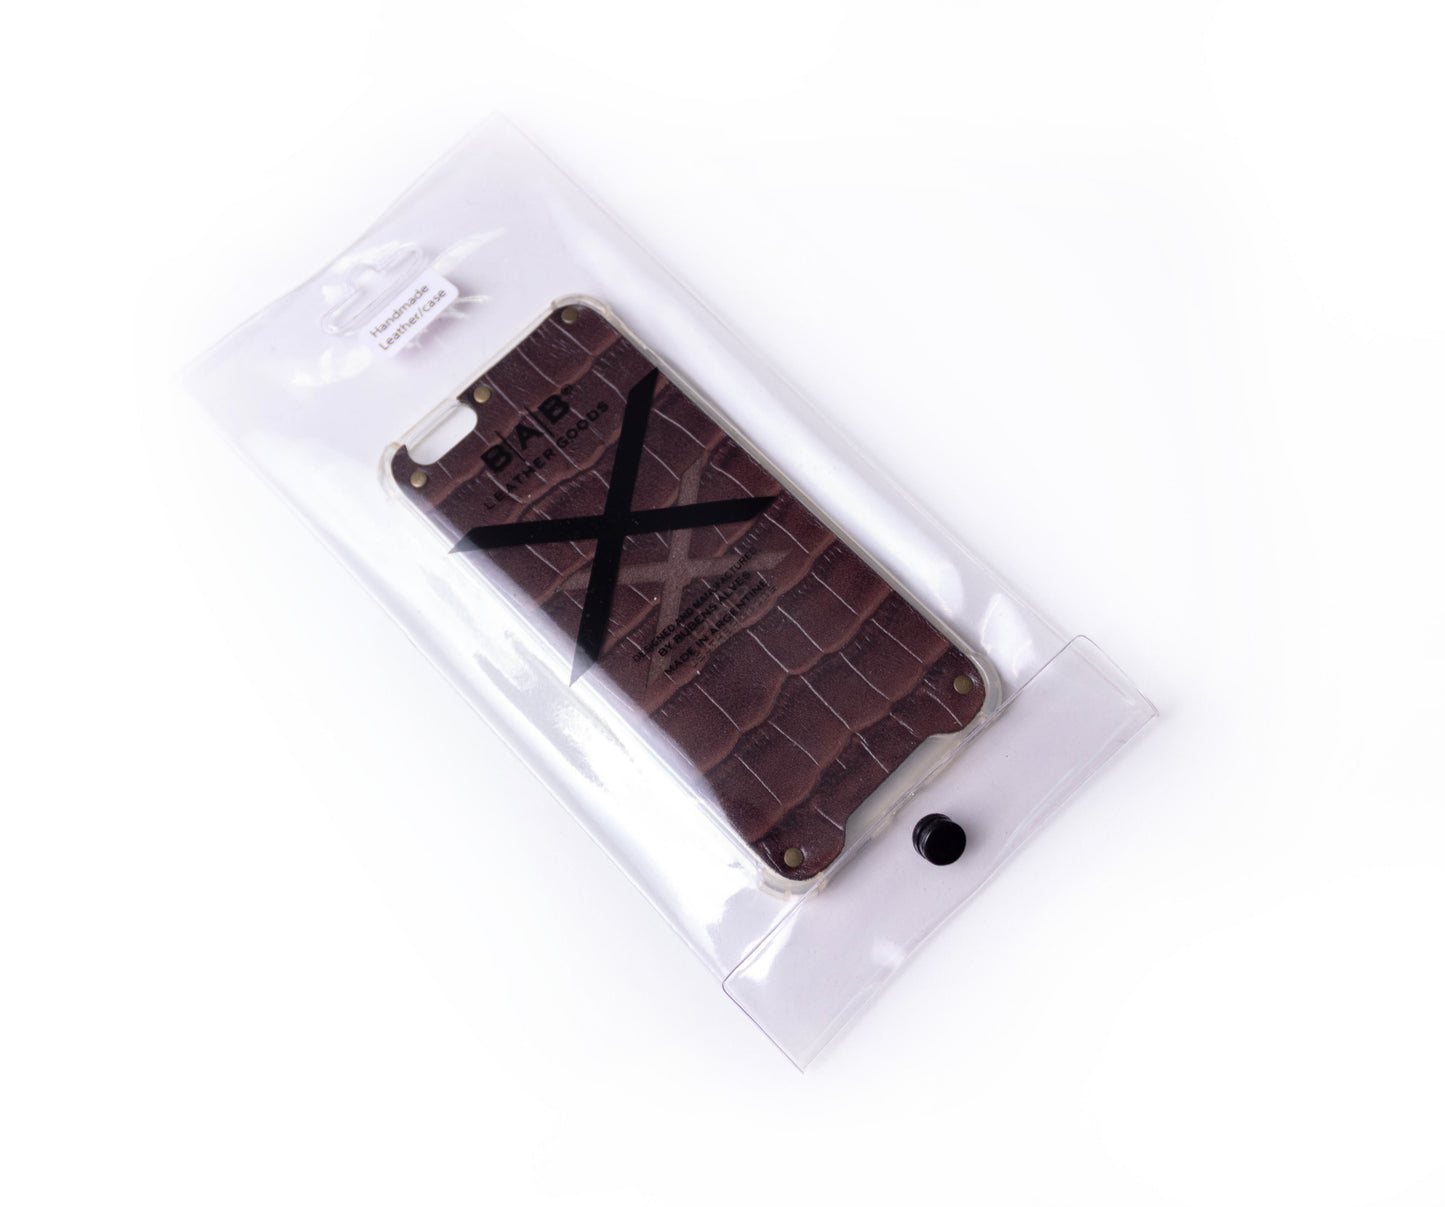 Capa para iPhone de Couro Genuíno de Crocodilo Marrom Texturizado cortado e gravado a laser, 5 Rebites de Bronze.- F36